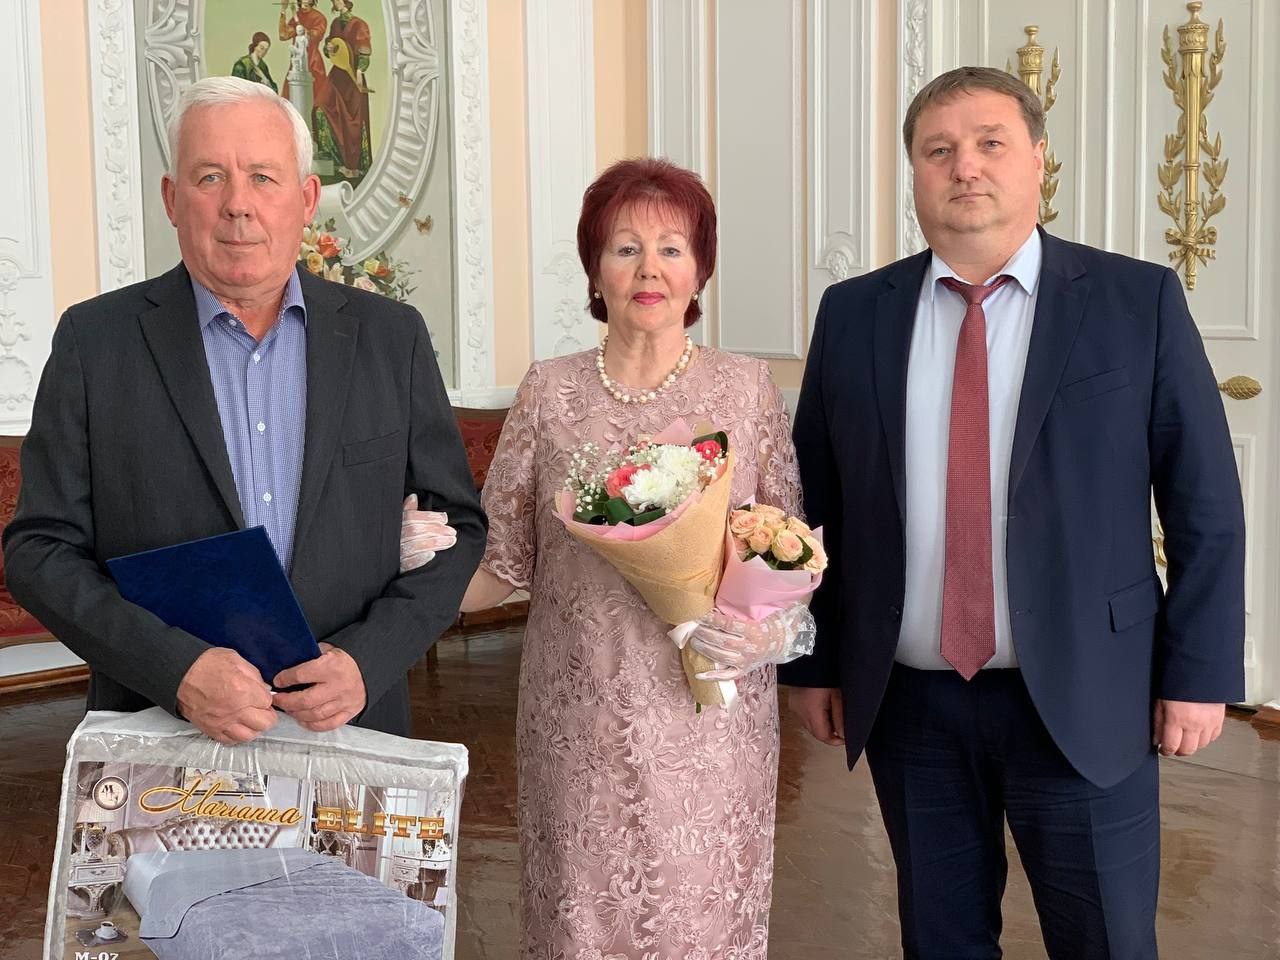 Мэр Болдакин поздравил супругов из Ульяновска с золотой свадьбой